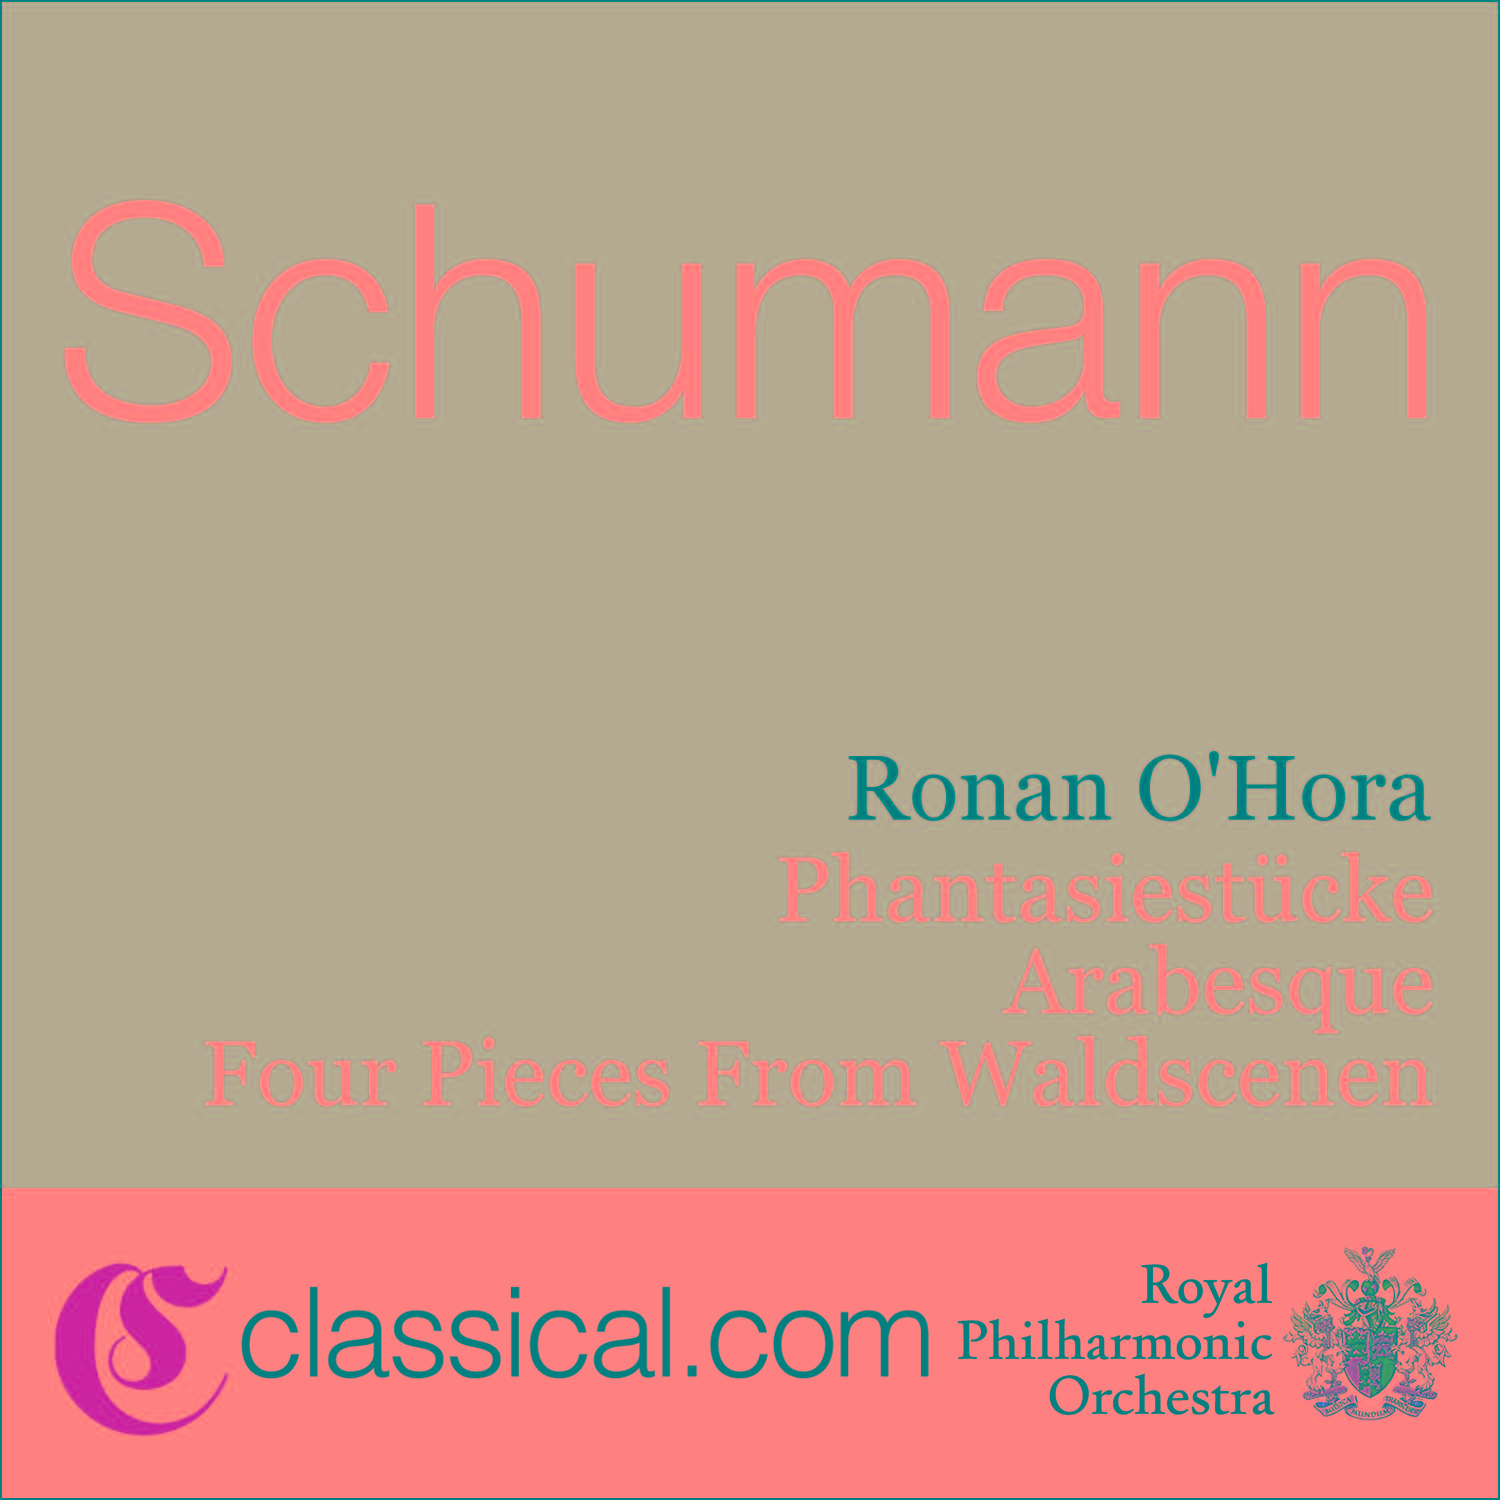 Robert Schumann, Phantasiestü cke, Op. 12